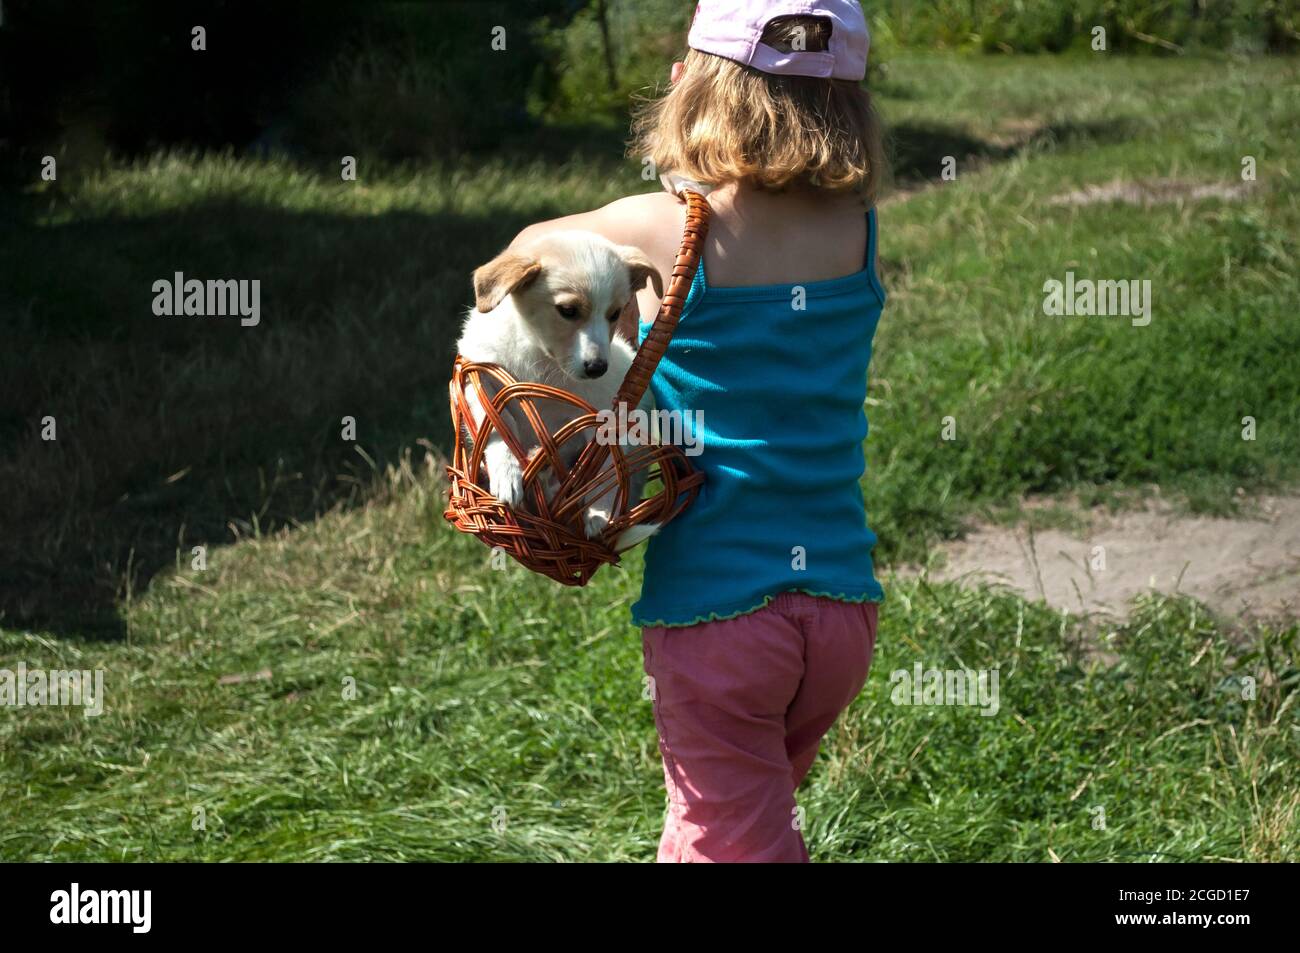 Una ragazza di 5 anni gioca con un cane e lo porta in un cestino. Preso dalla parte posteriore. Soleggiata Foto Stock